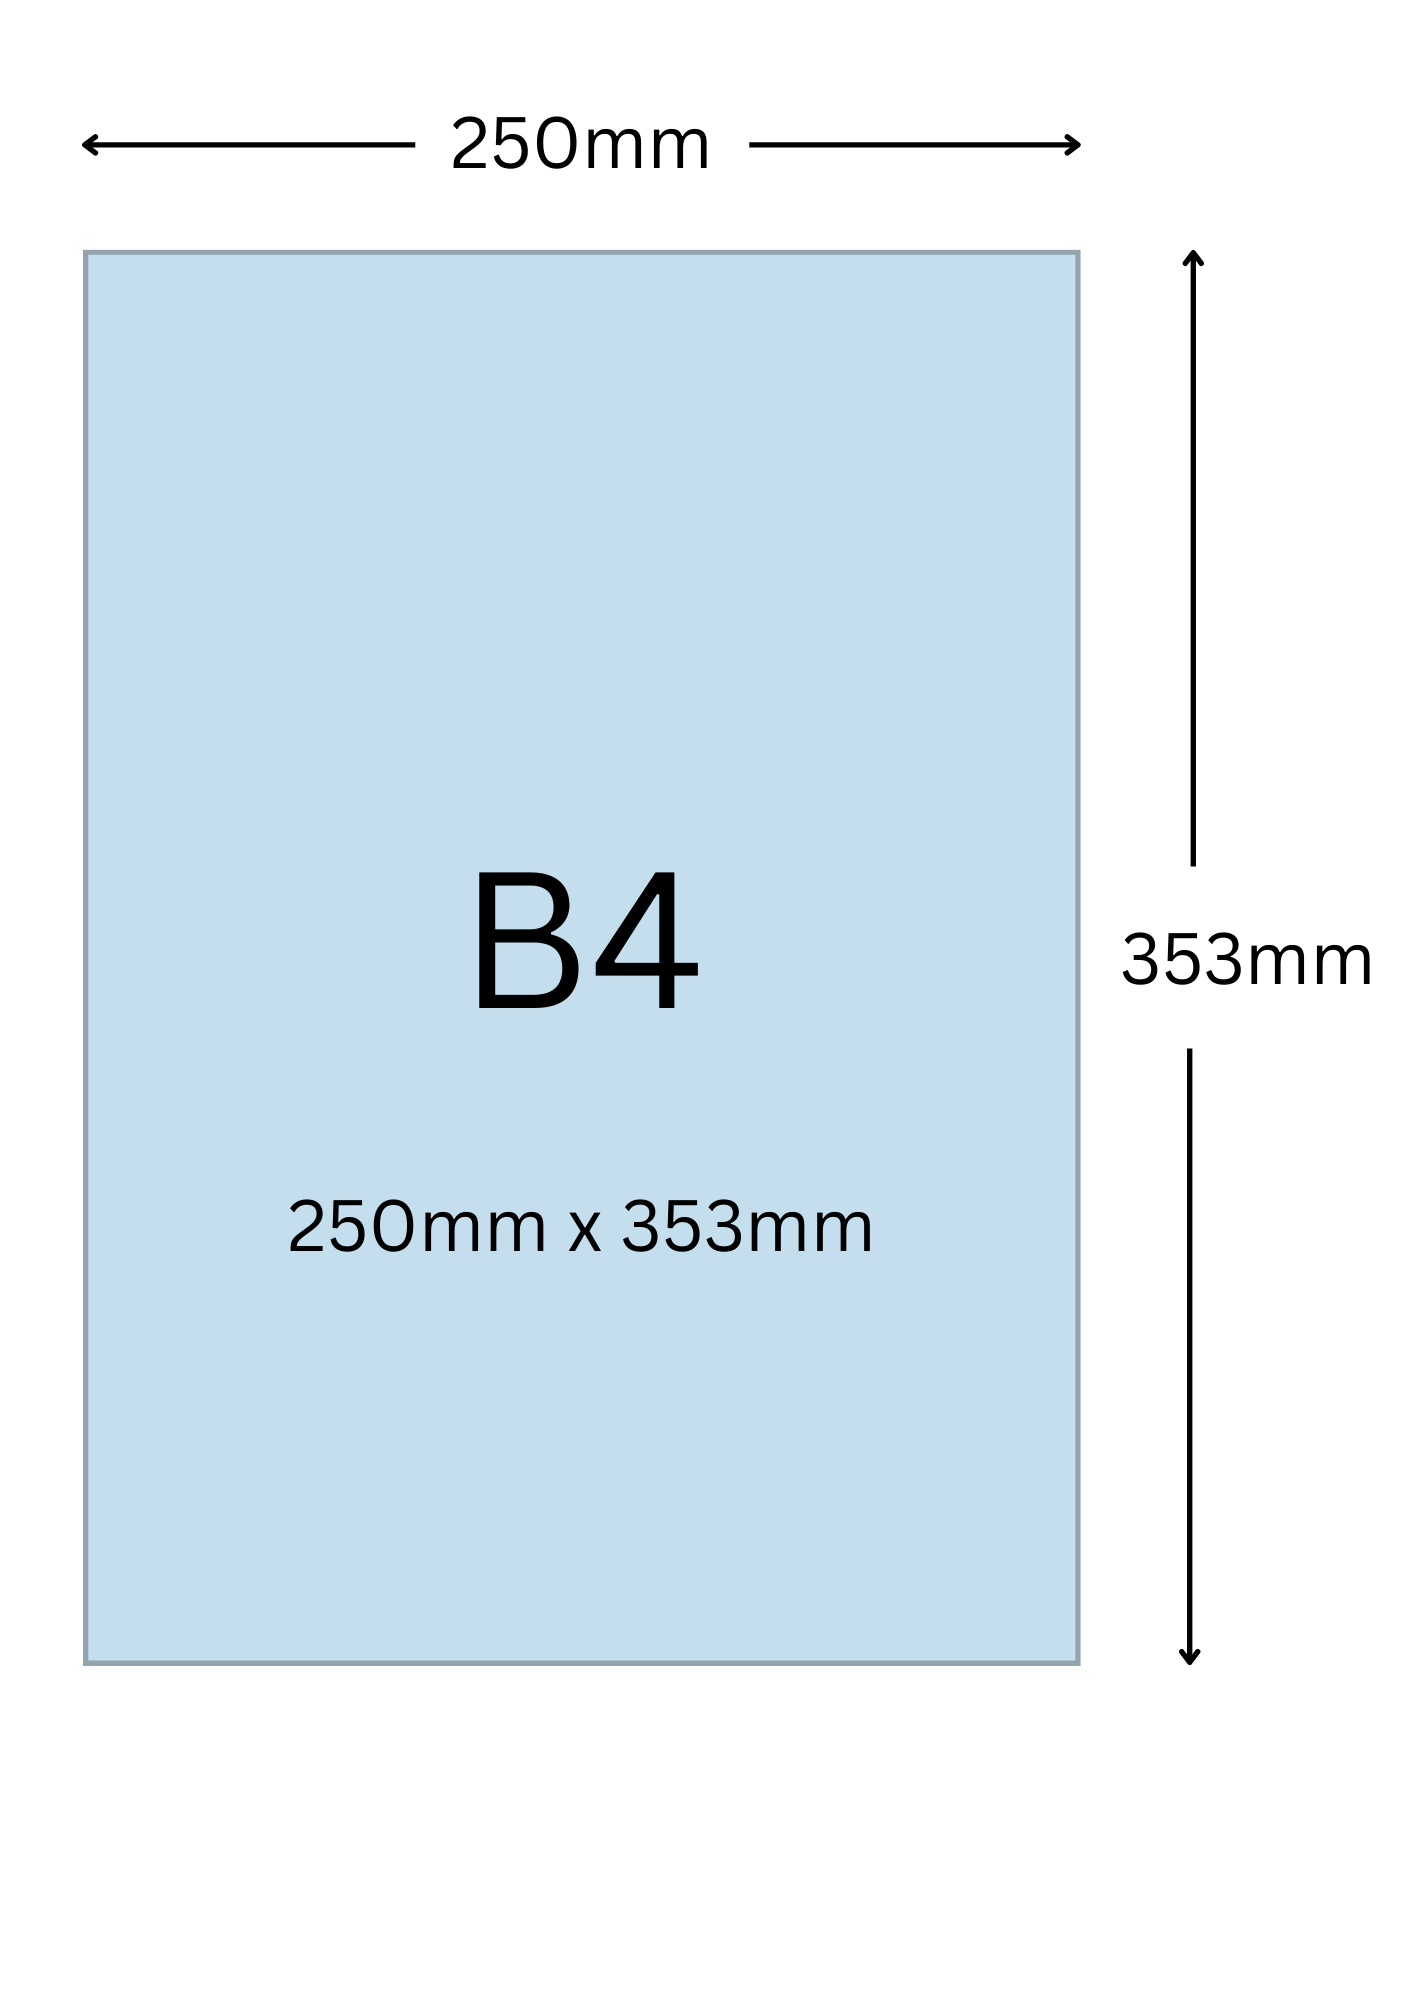 B4尺寸公分, B4紙張尺寸大小, B4紙張對應開數是幾開